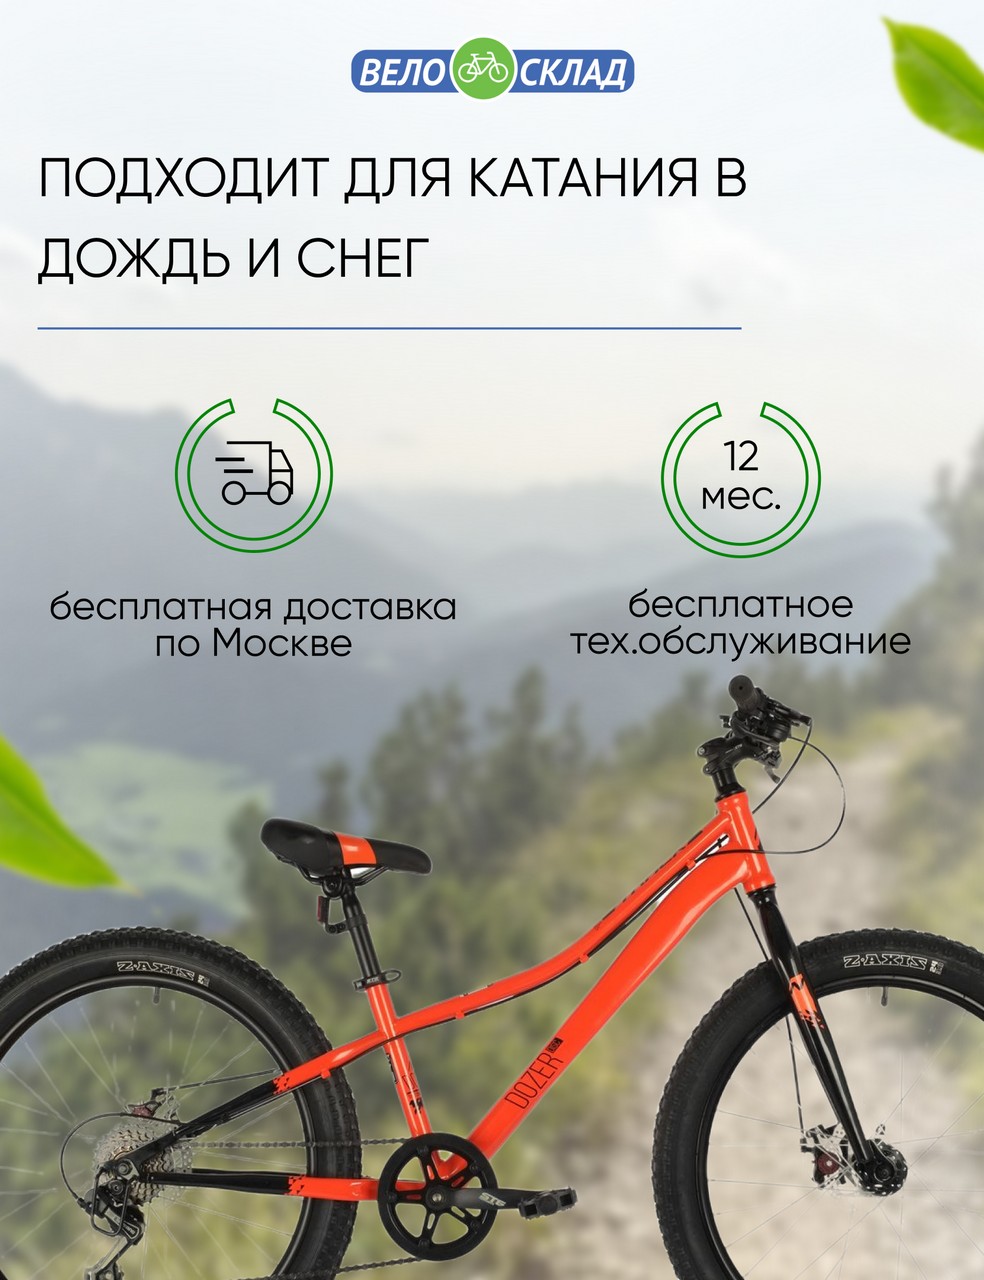 Подростковый велосипед Novatrack Dozer 24 STD Disc, год 2021, цвет Оранжевый, ростовка 12